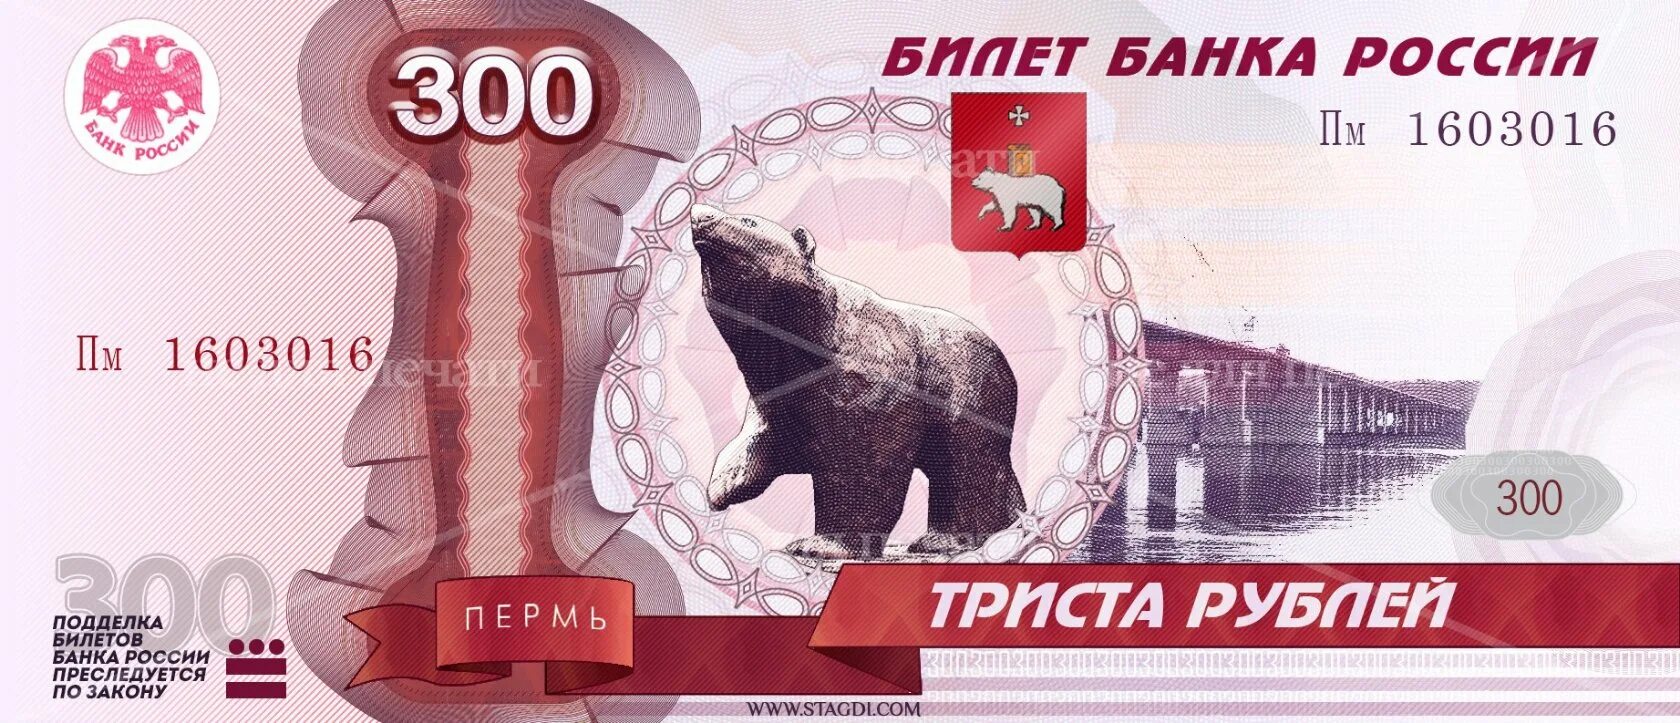 Купюра 300 рублей. Триста рублей купюра. Билет банка России 300 рублей. Российская купюра 300 рублей.